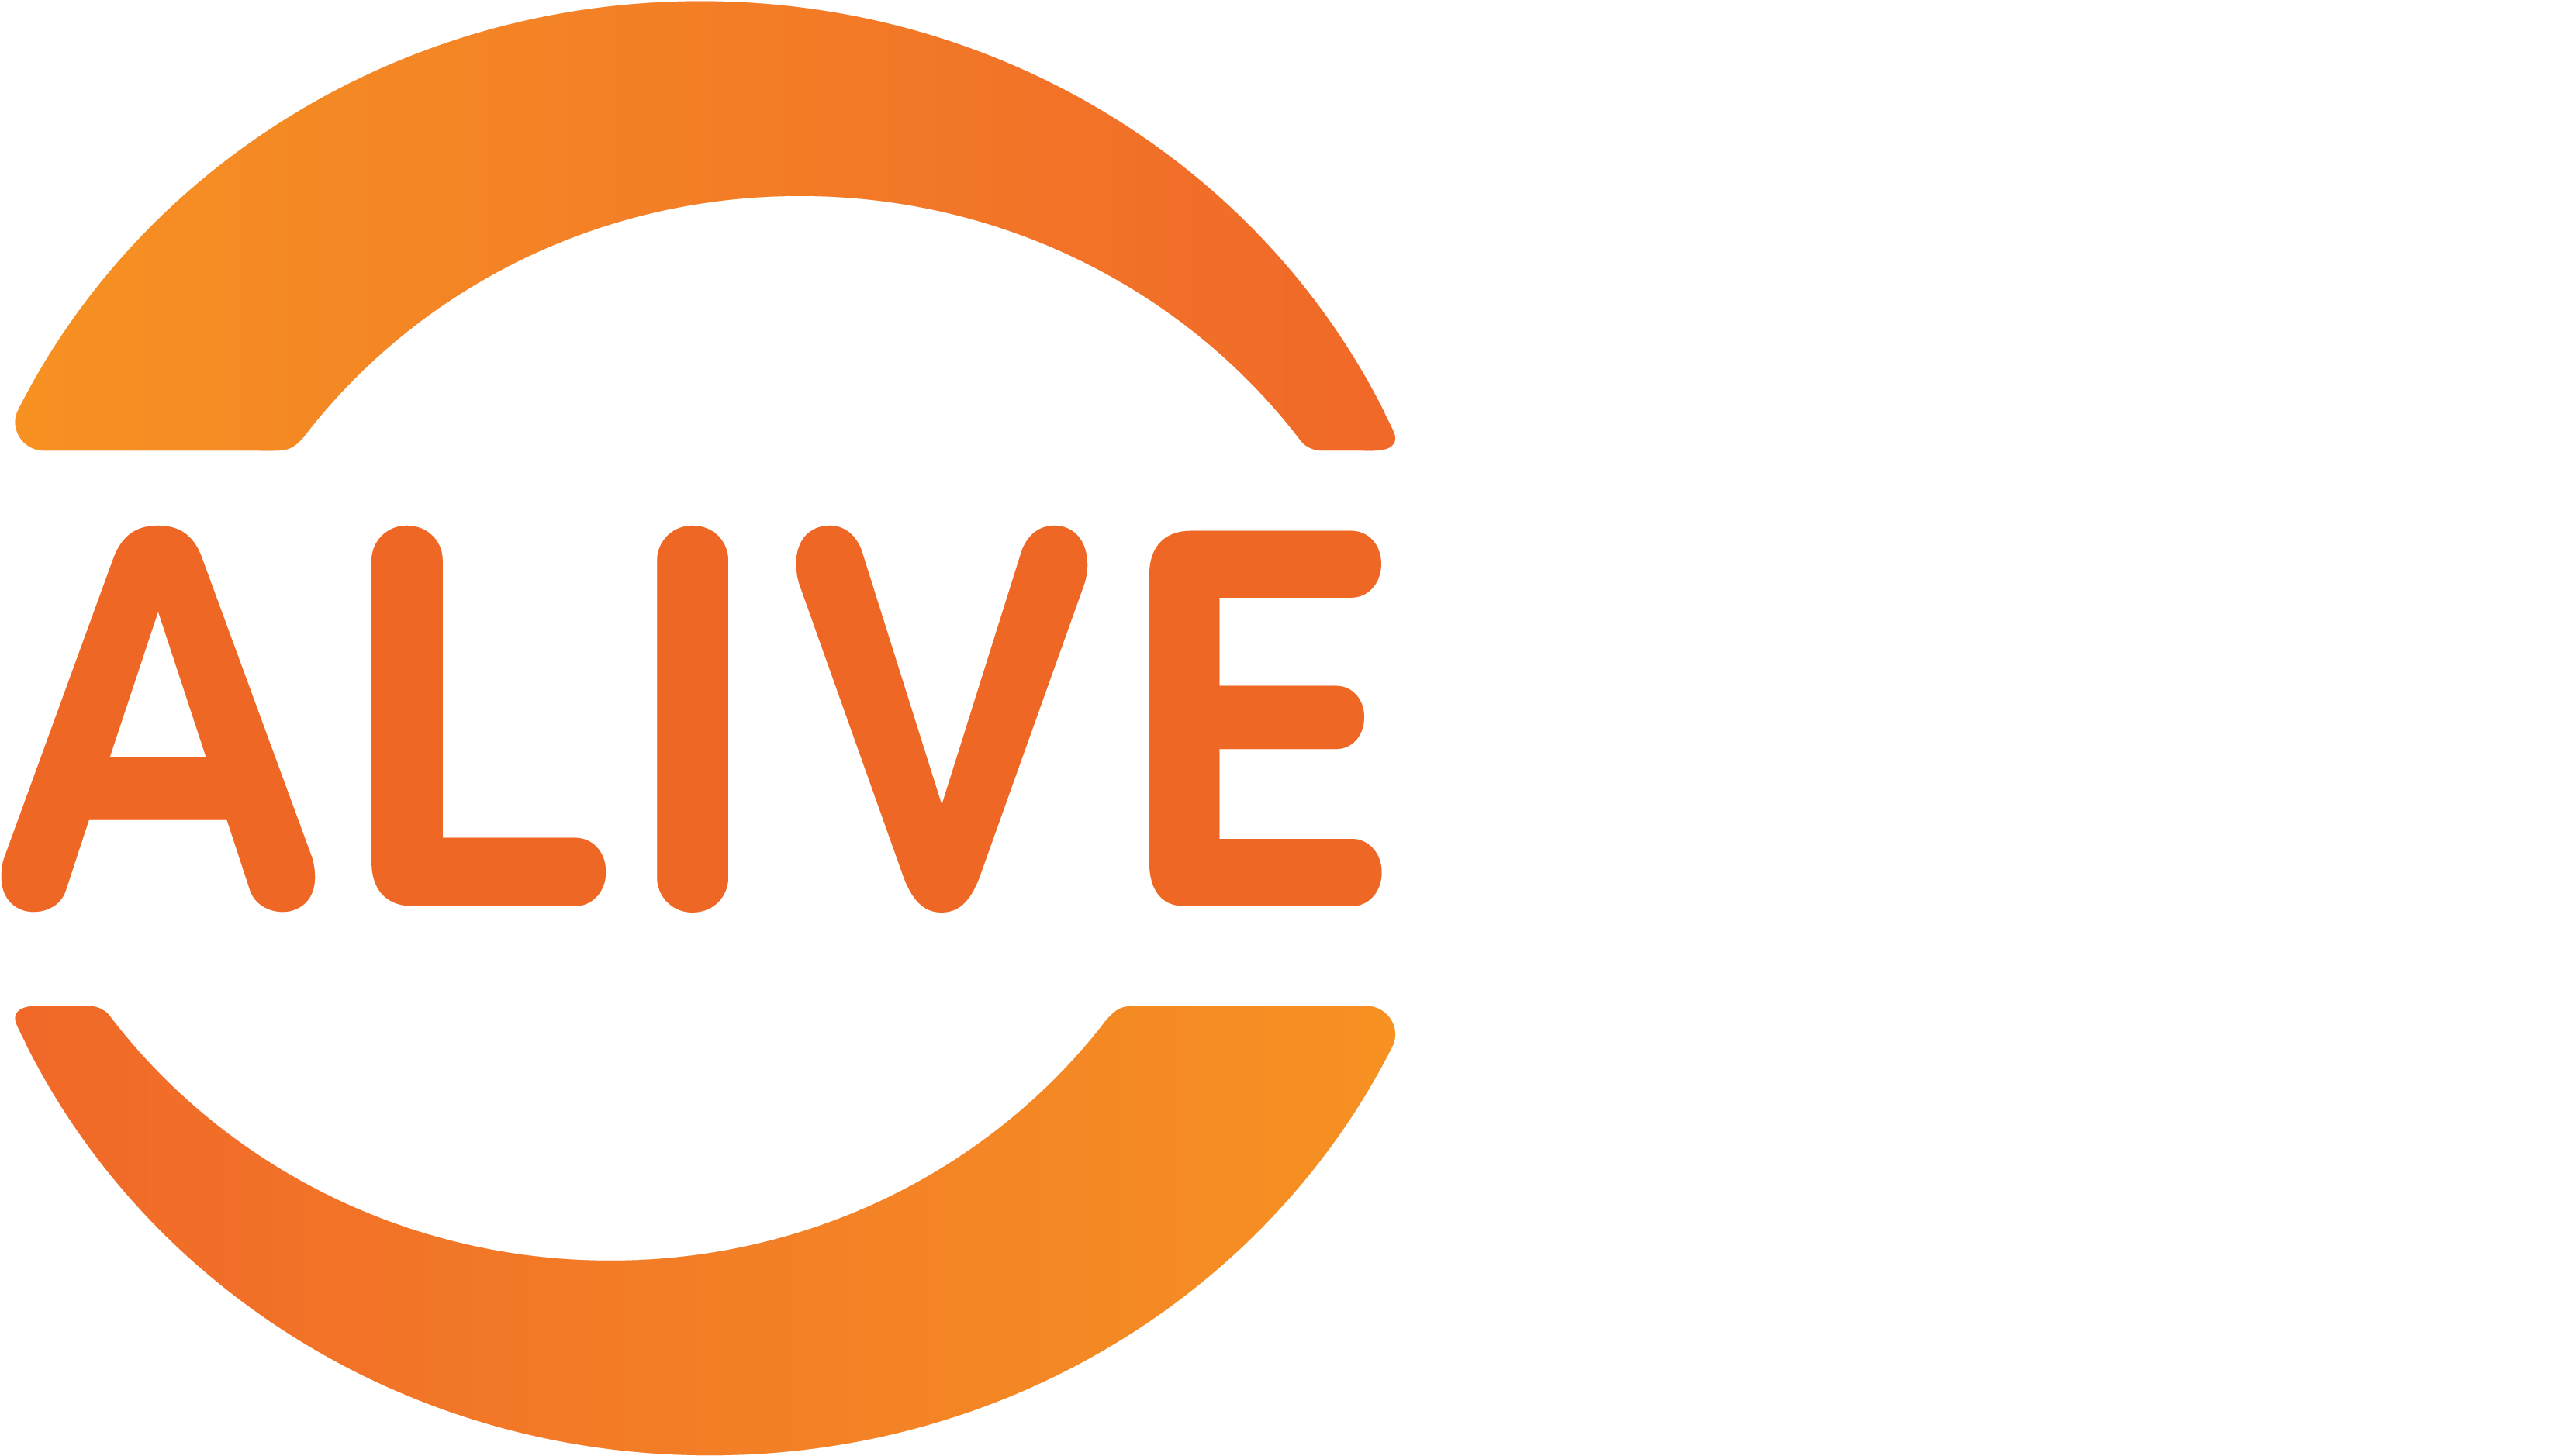 Alive Personal Training - Placa De Vire A Esquerda (3508x2172)